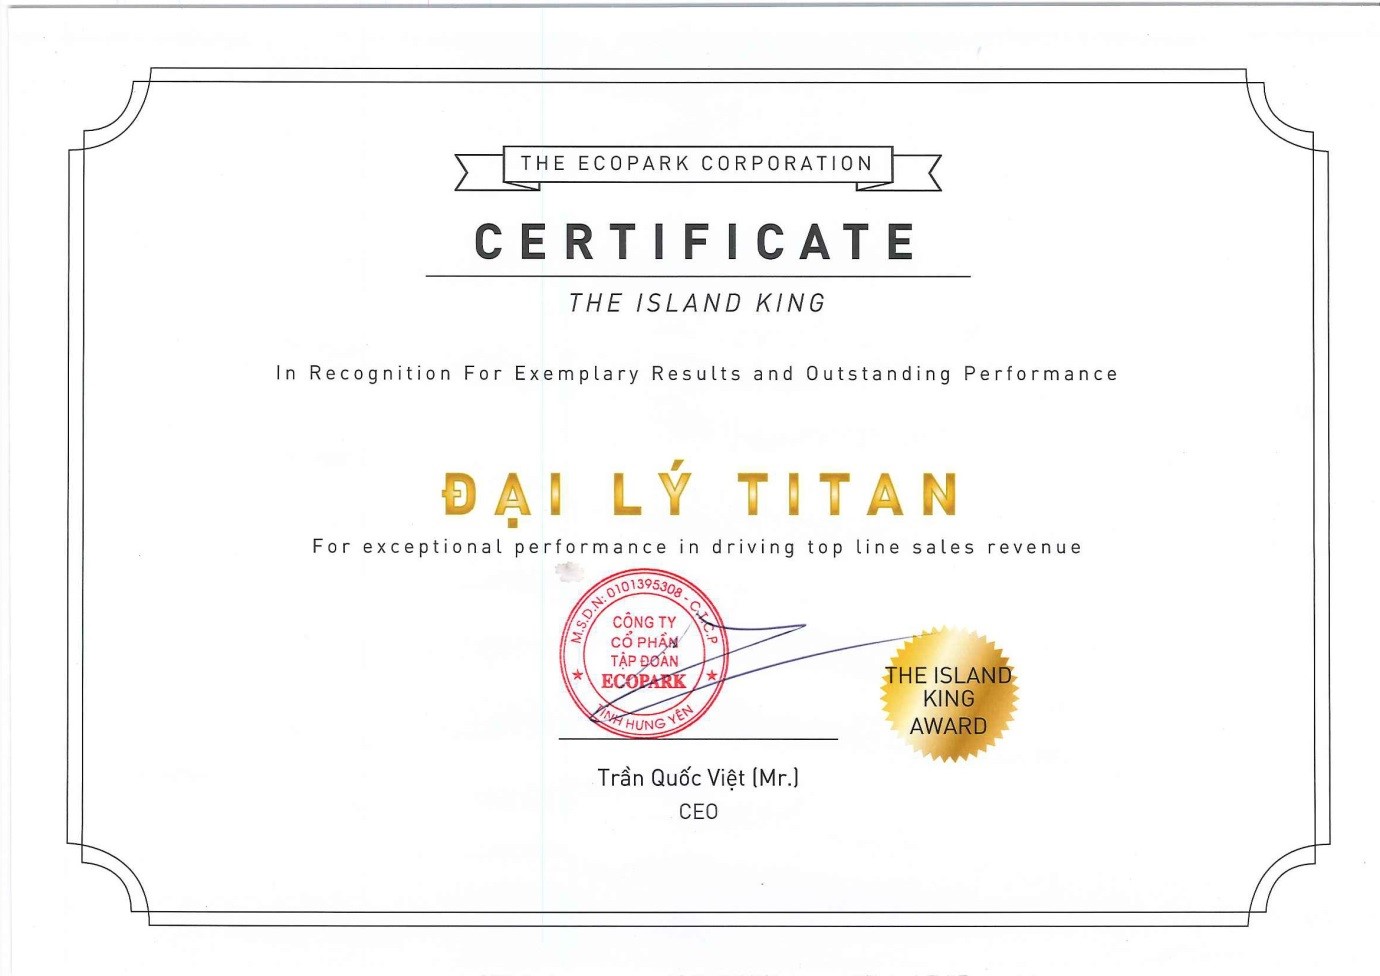 Giải thưởng danh giá Titan đạt được tại Ecopark trong 2 năm qua